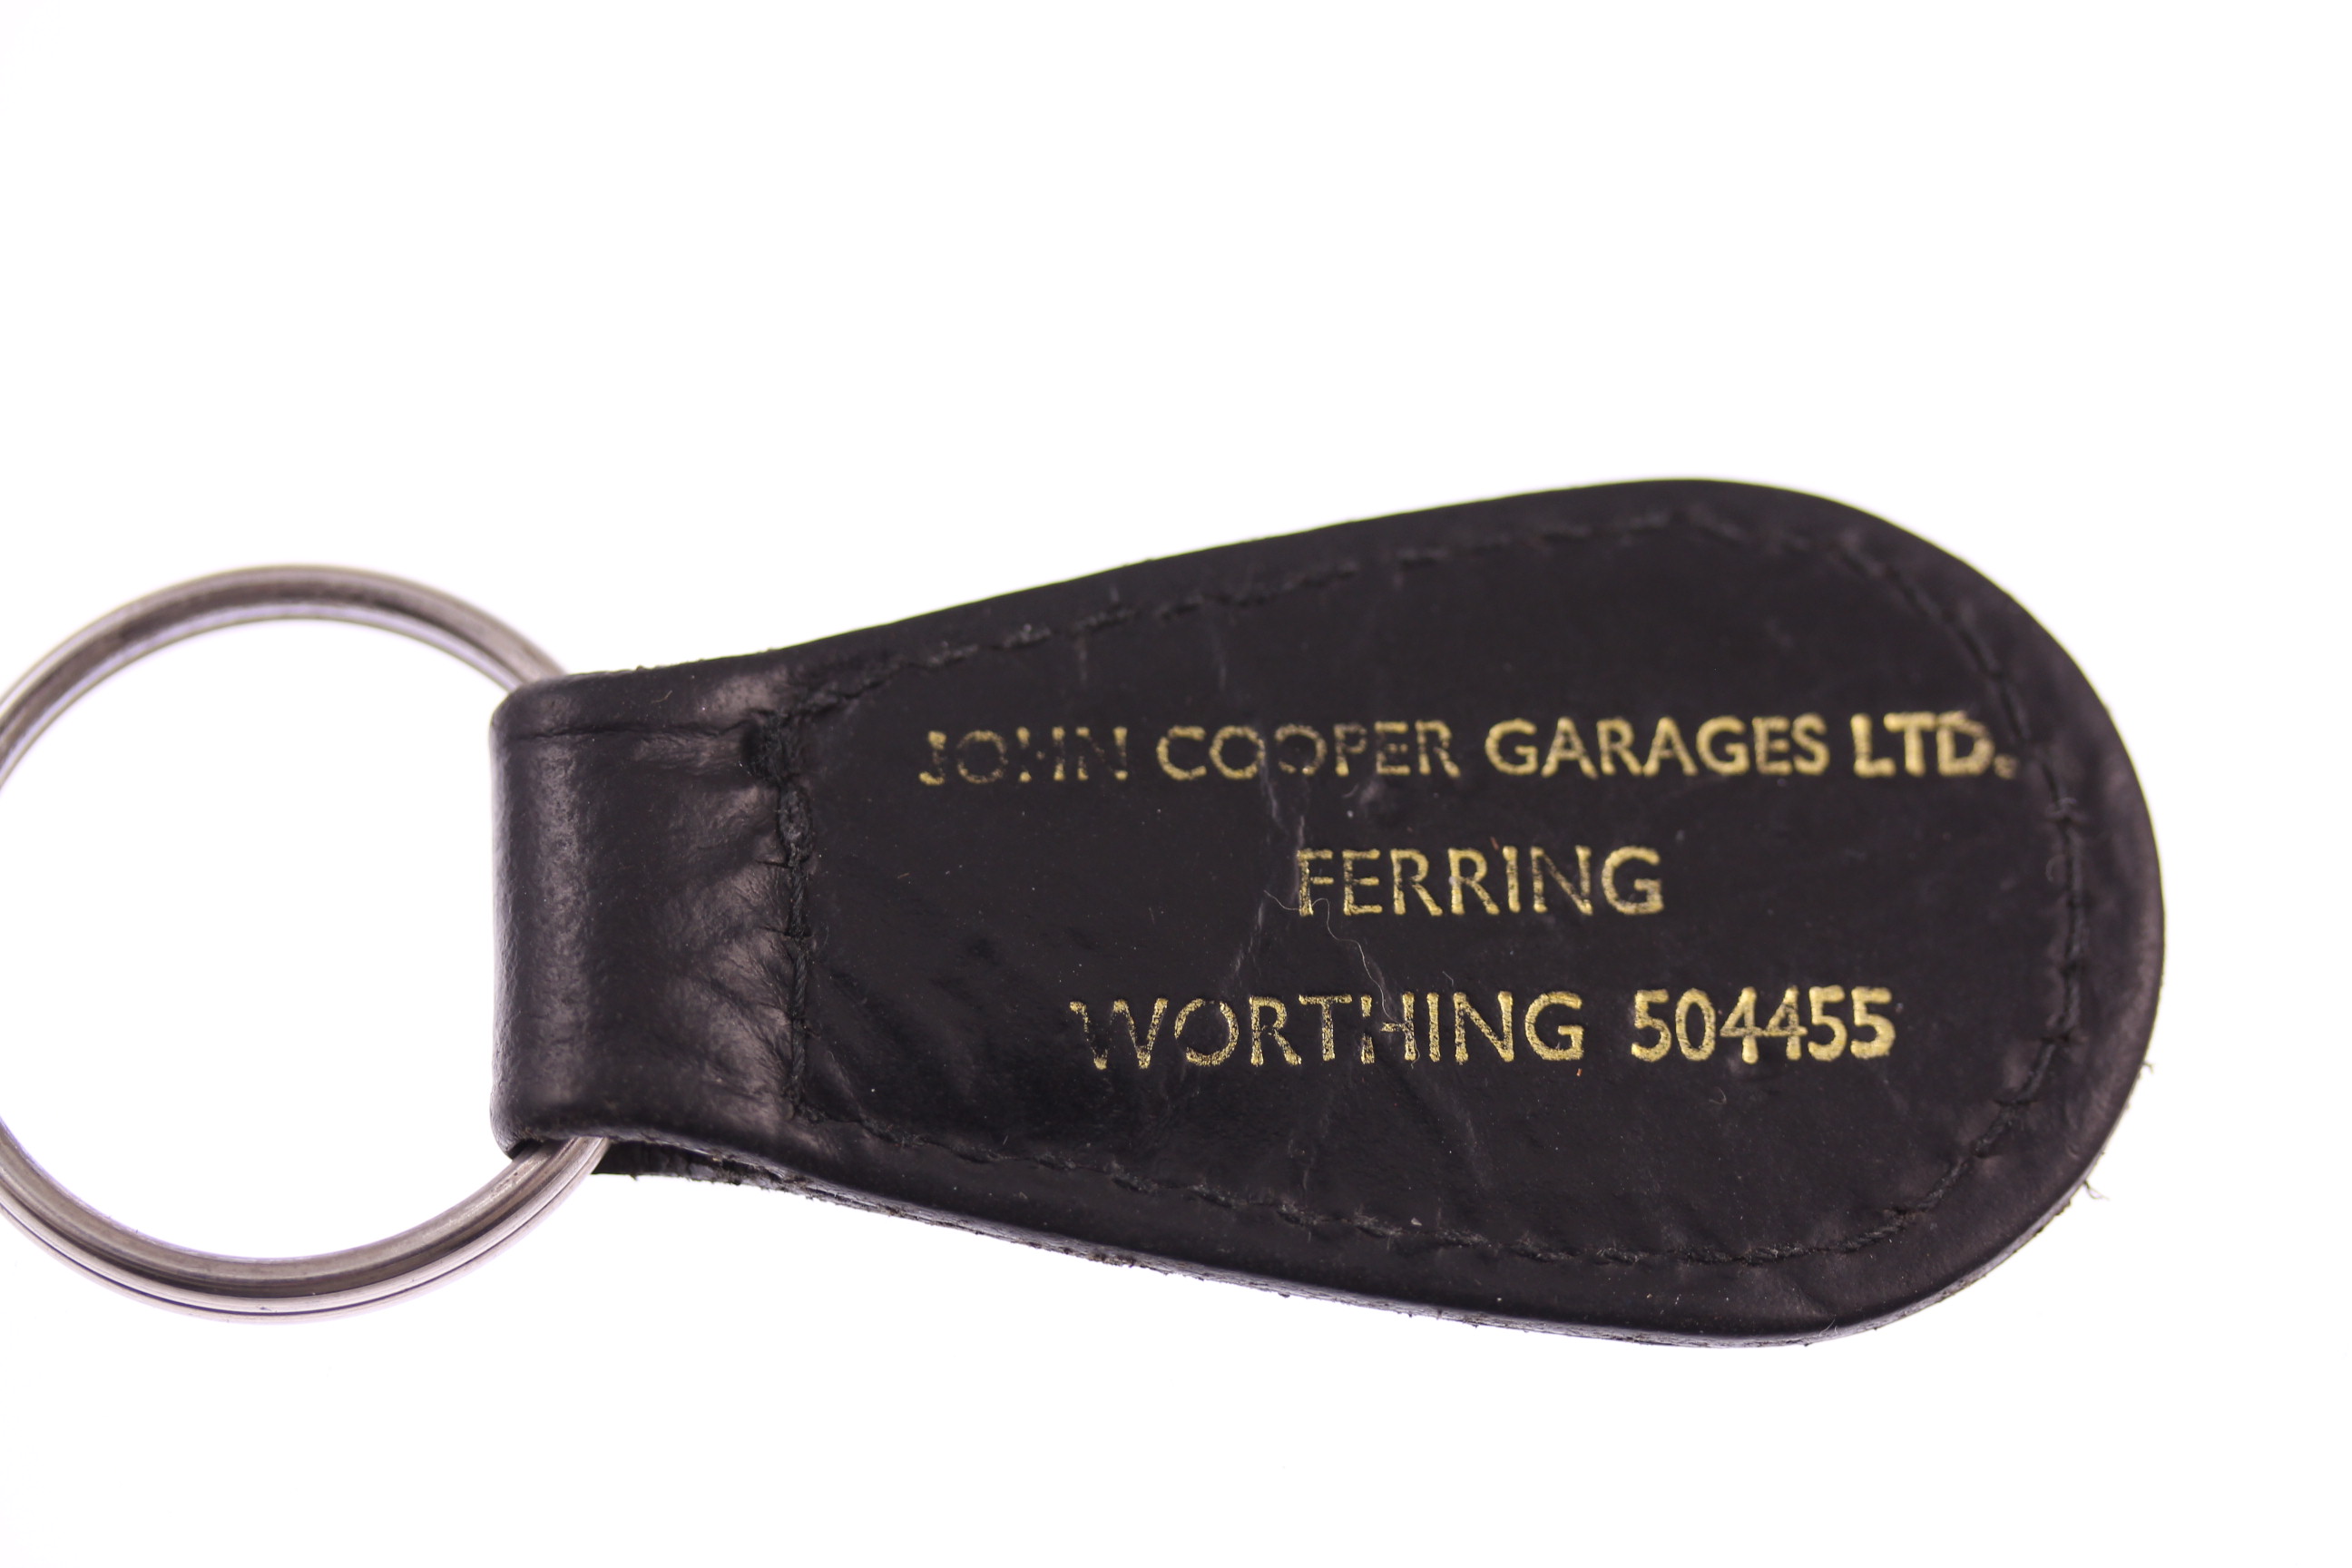 Porte clés cuir - Word Champions Cooper